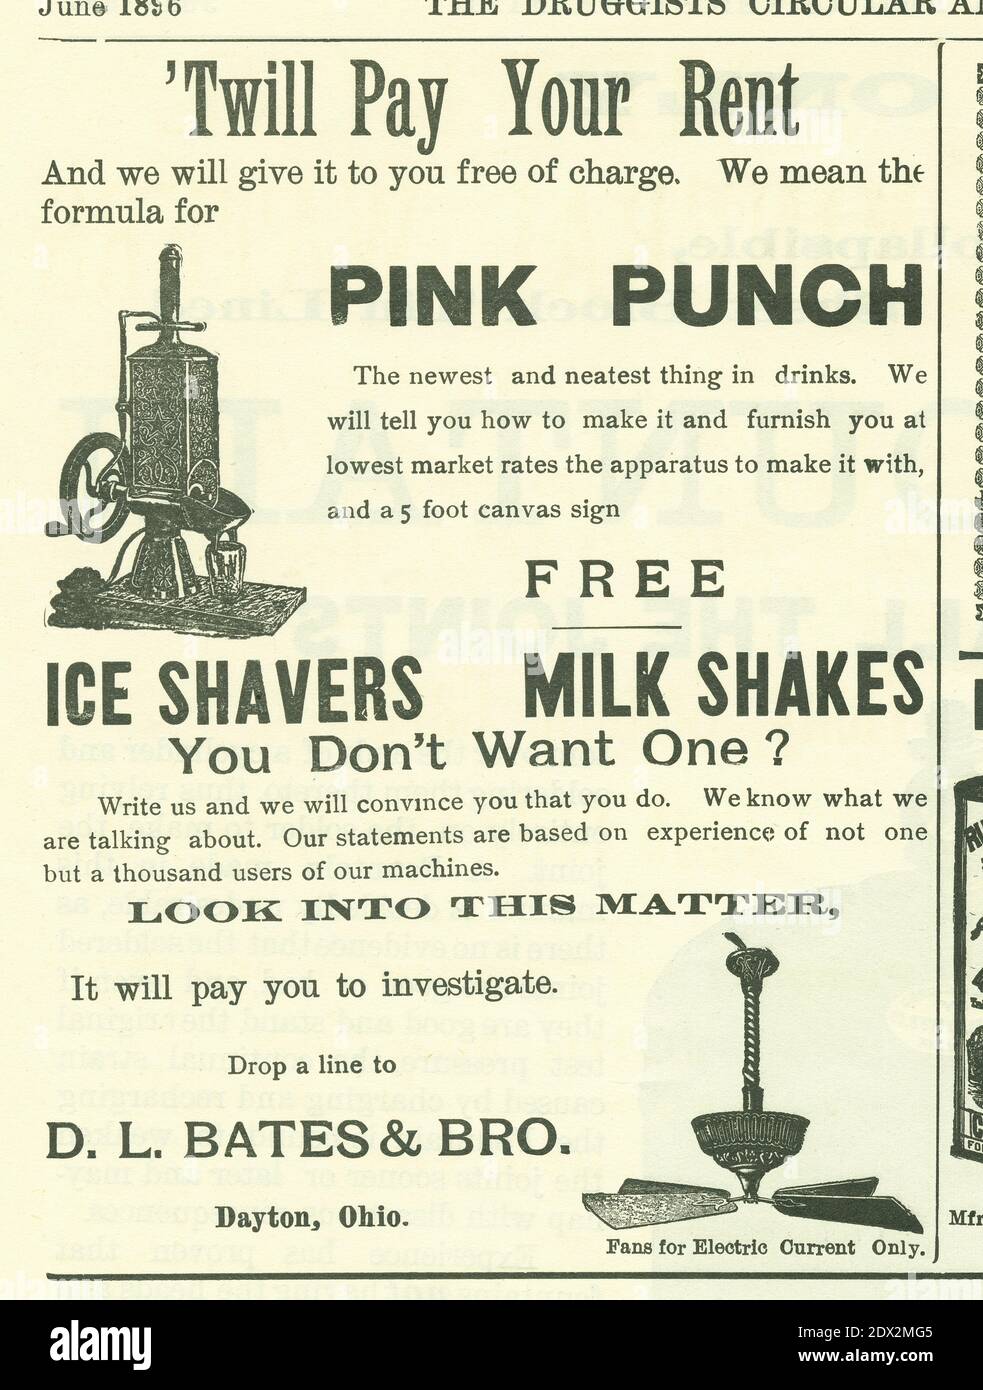 Antique Junio 1896 anuncio de D.L. Bates & Bro. De Dayton, Ohio, por sus hielos y sus chistes de leche en la Circular y la Gaceta Química de los Drugists. La oferta es para una receta Pink Punch gratuita con la compra de una máquina. FUENTE: ANUNCIO ORIGINAL Foto de stock